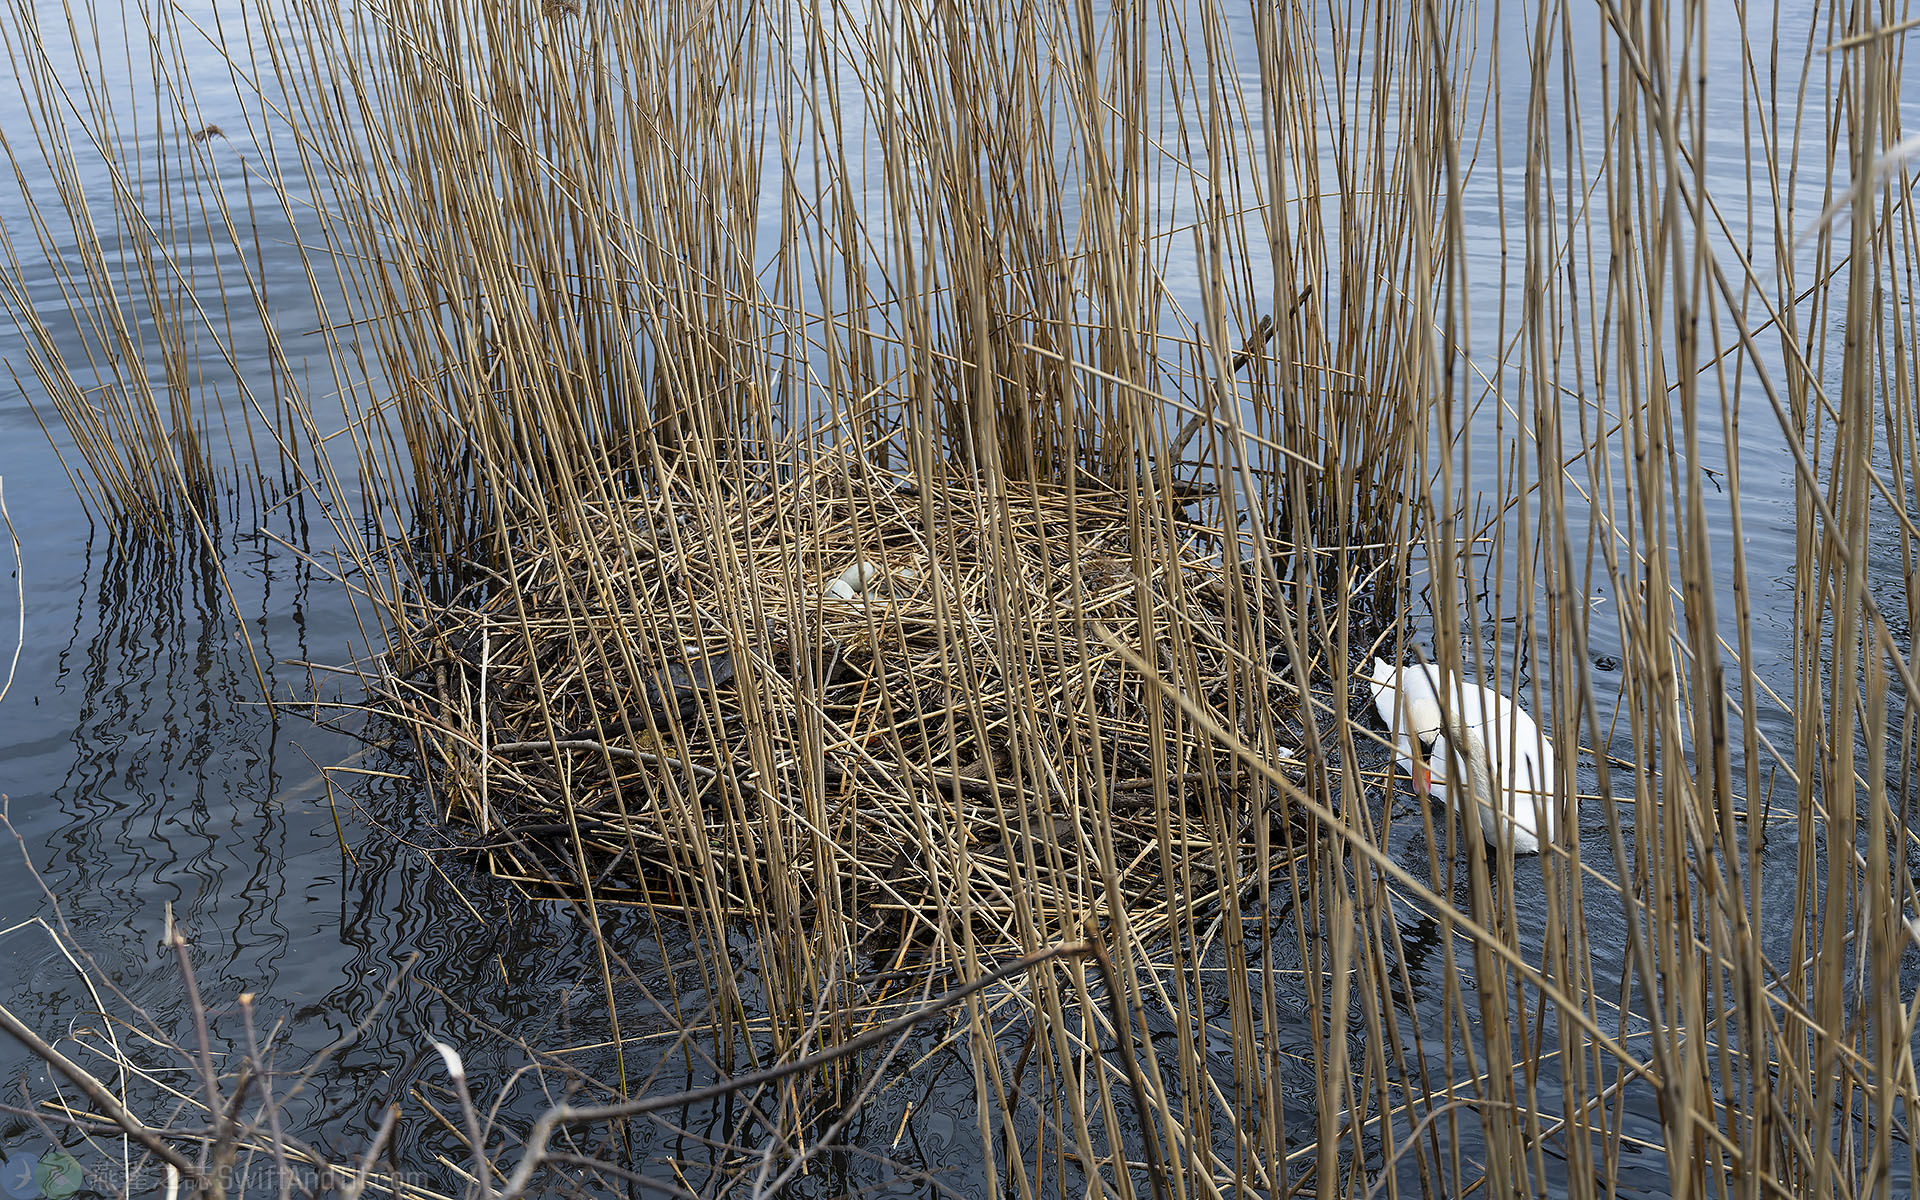 疣鼻天鵝的巢 Nest of Mute Swan